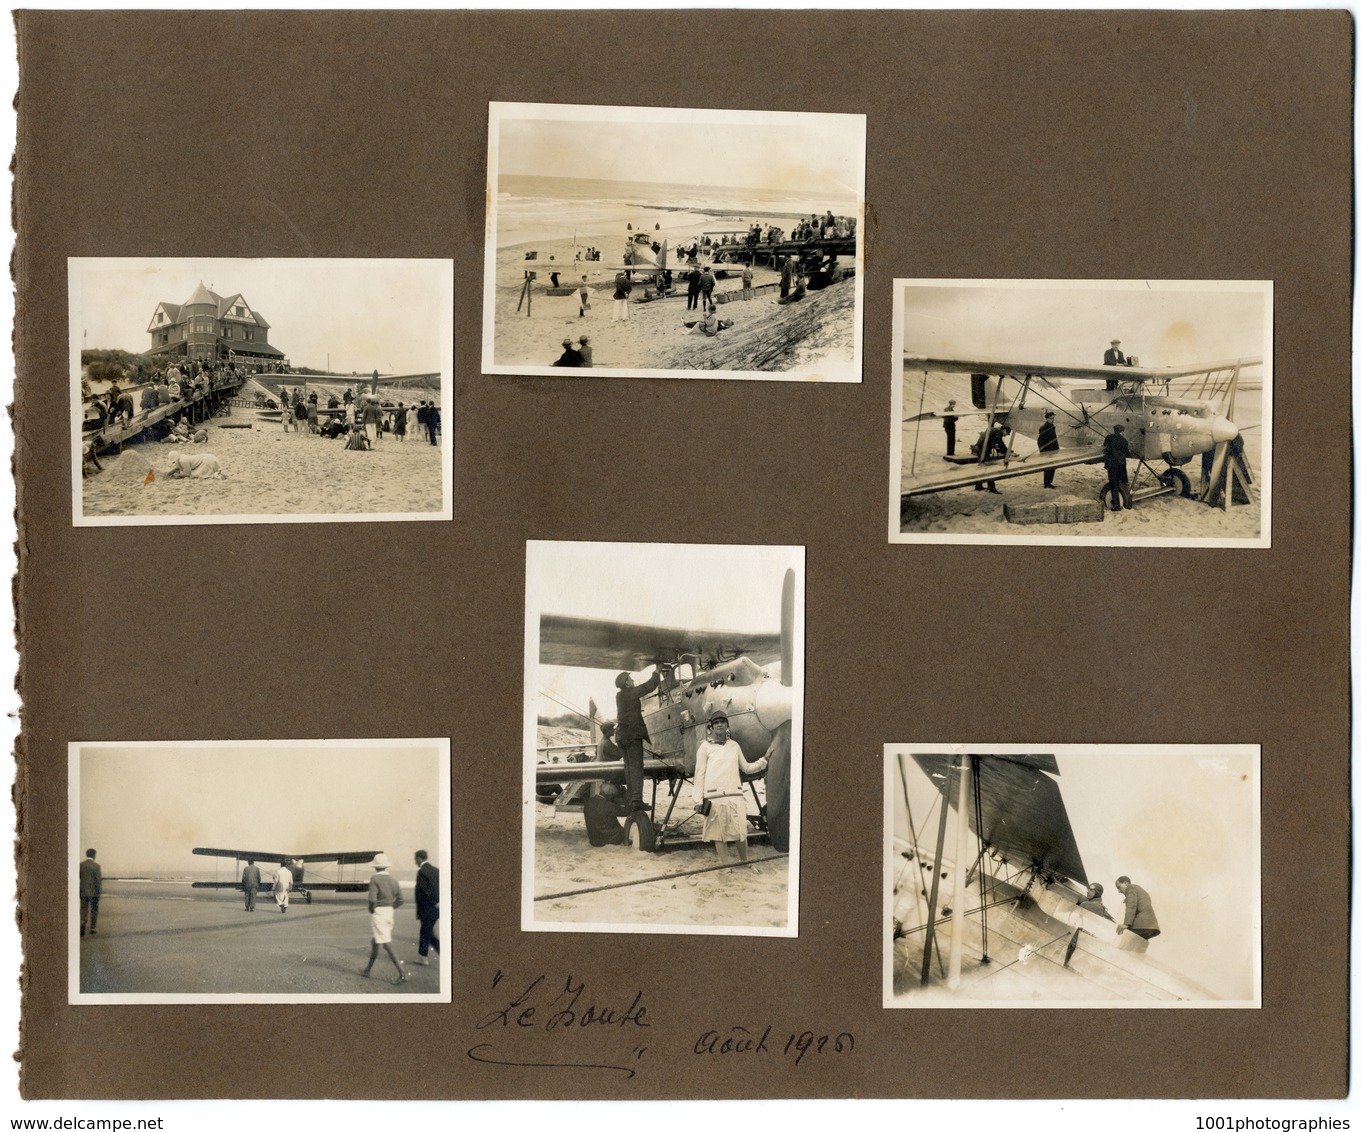 "Le Zoute" Aout 1926. Exceptionnelle ensemble de 6 photographies originales d'époque d'un bi-plan sur la plage. FG0695